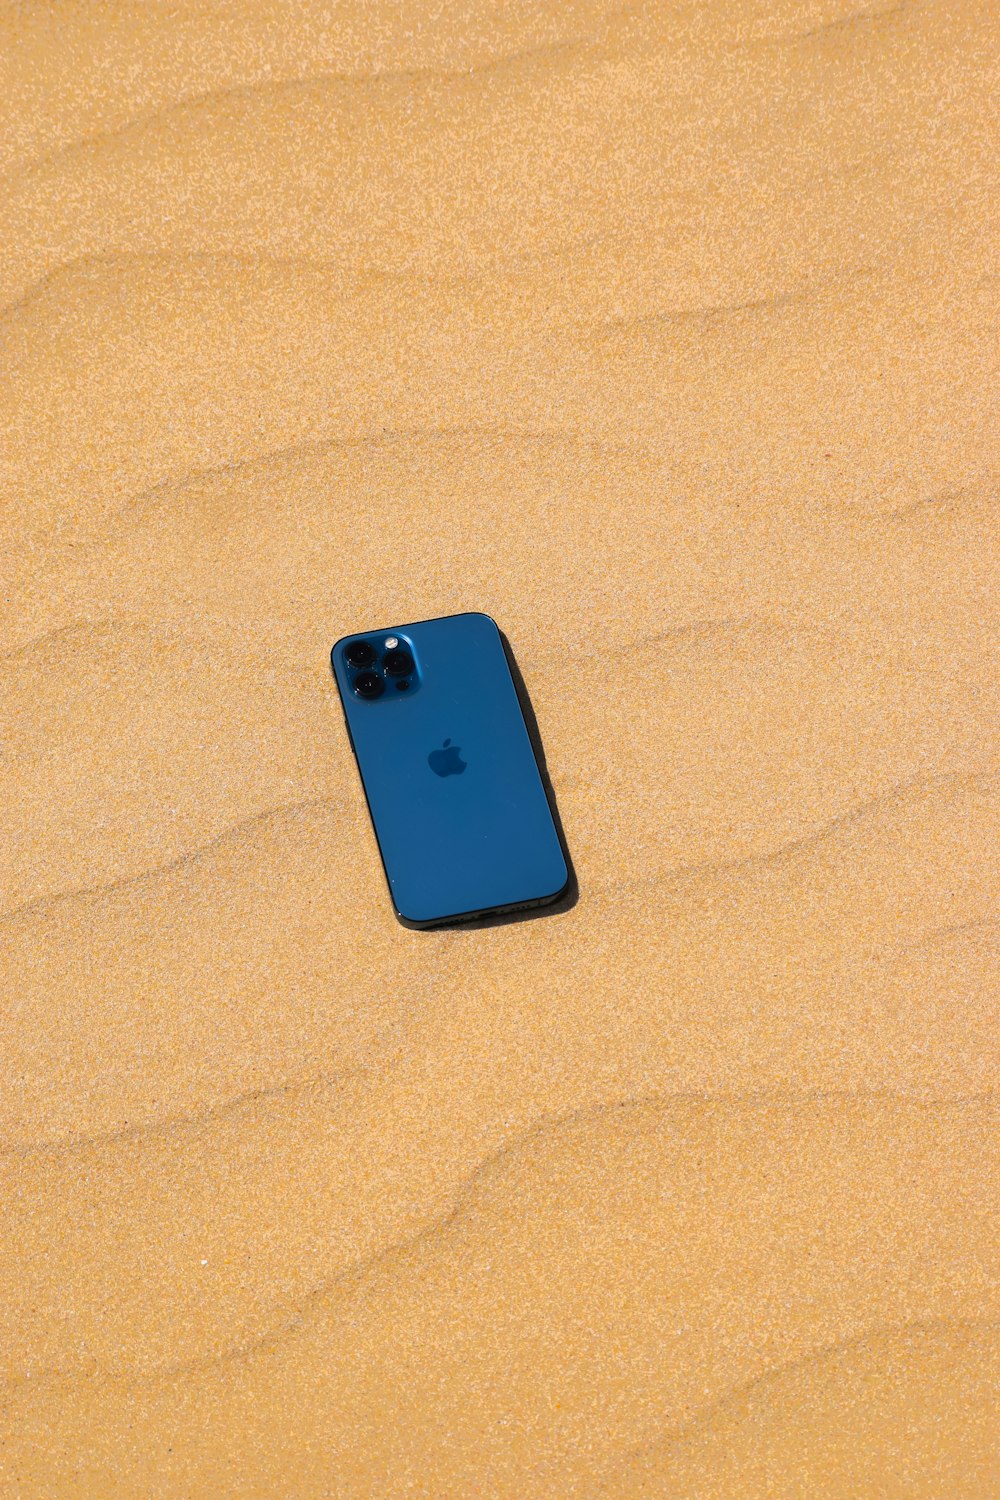 Coque iPhone bleue sur sable brun